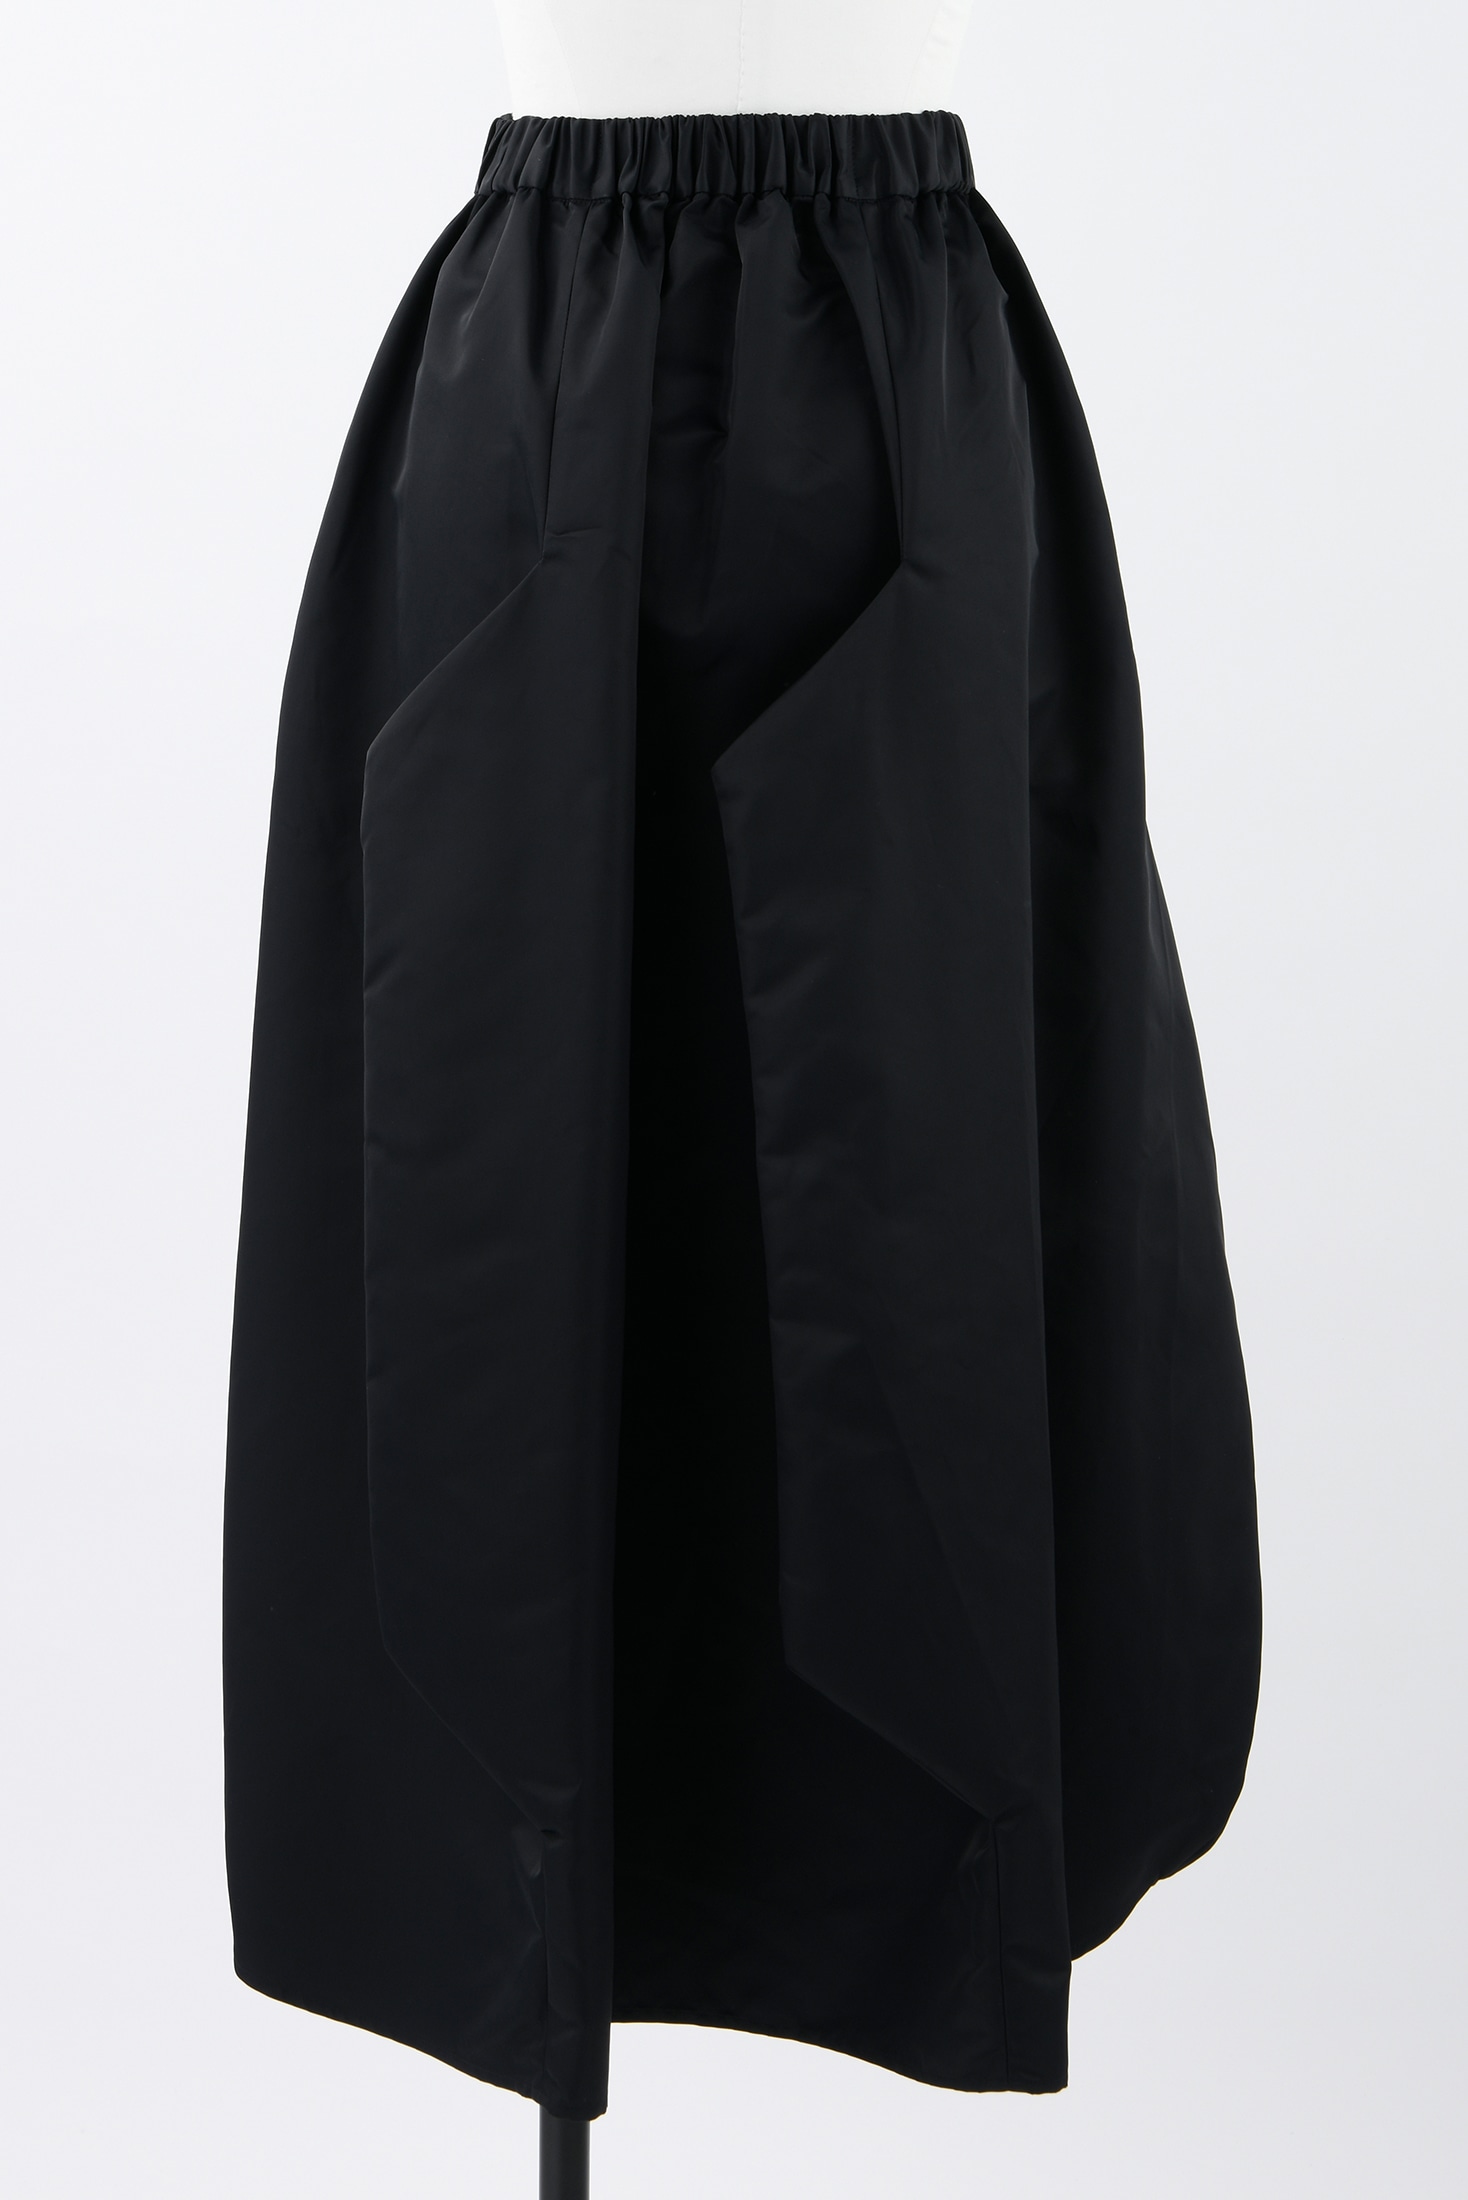 folding skirt